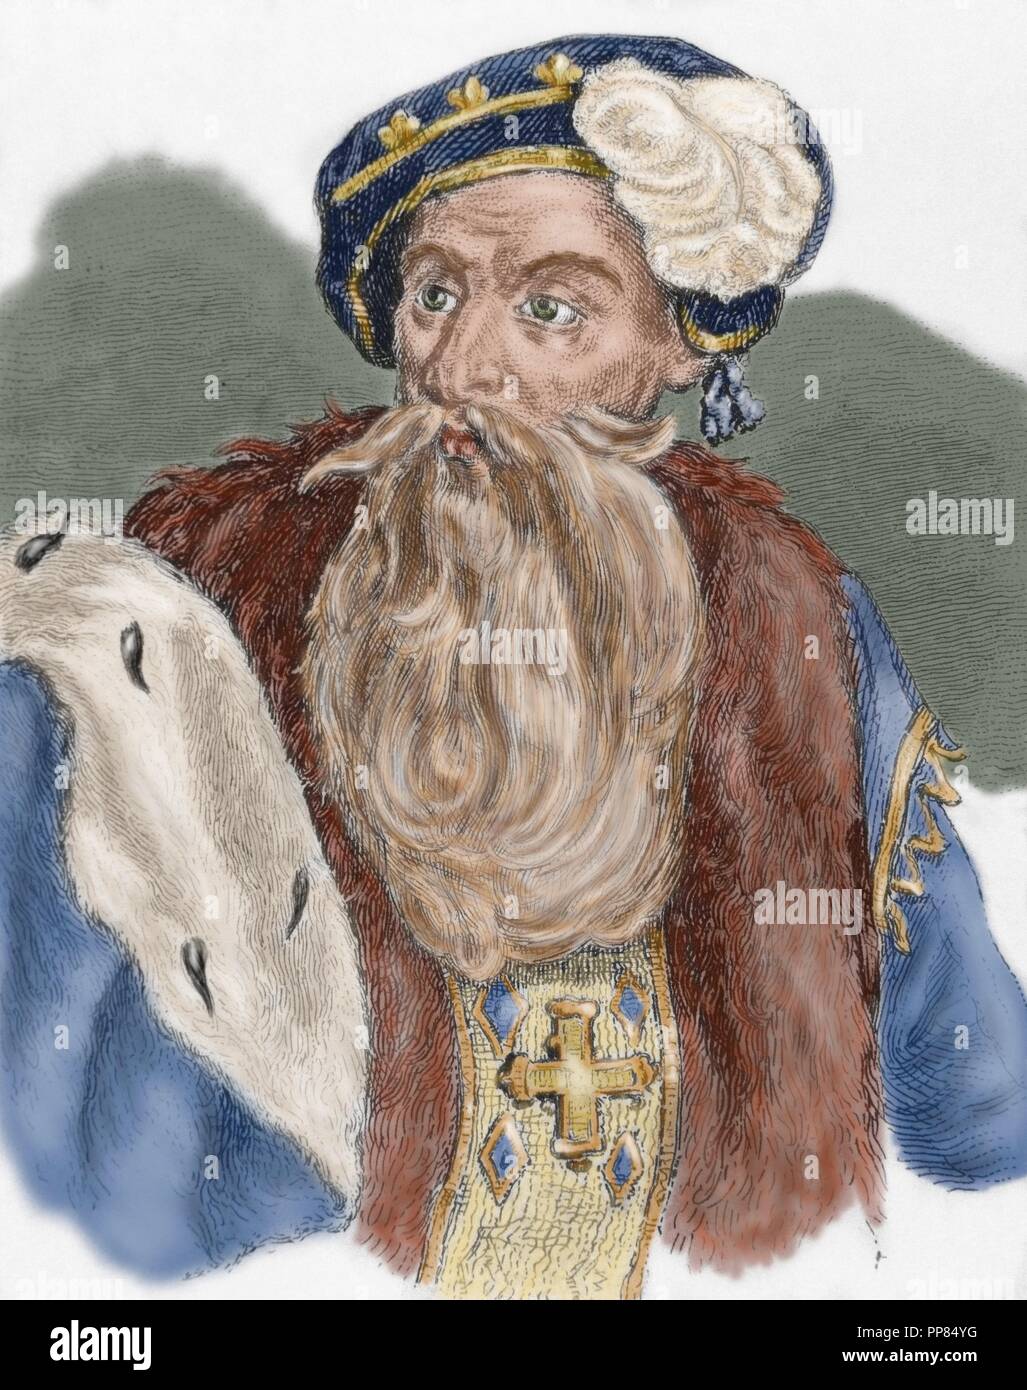 Gustavo di Svezia (1496-1560). Re di Svezia (1523-1560), fondatore del moderno stato svedese. In seguito noto come Gustav Vasa. Ritratto. Incisione. Colorati. Foto Stock